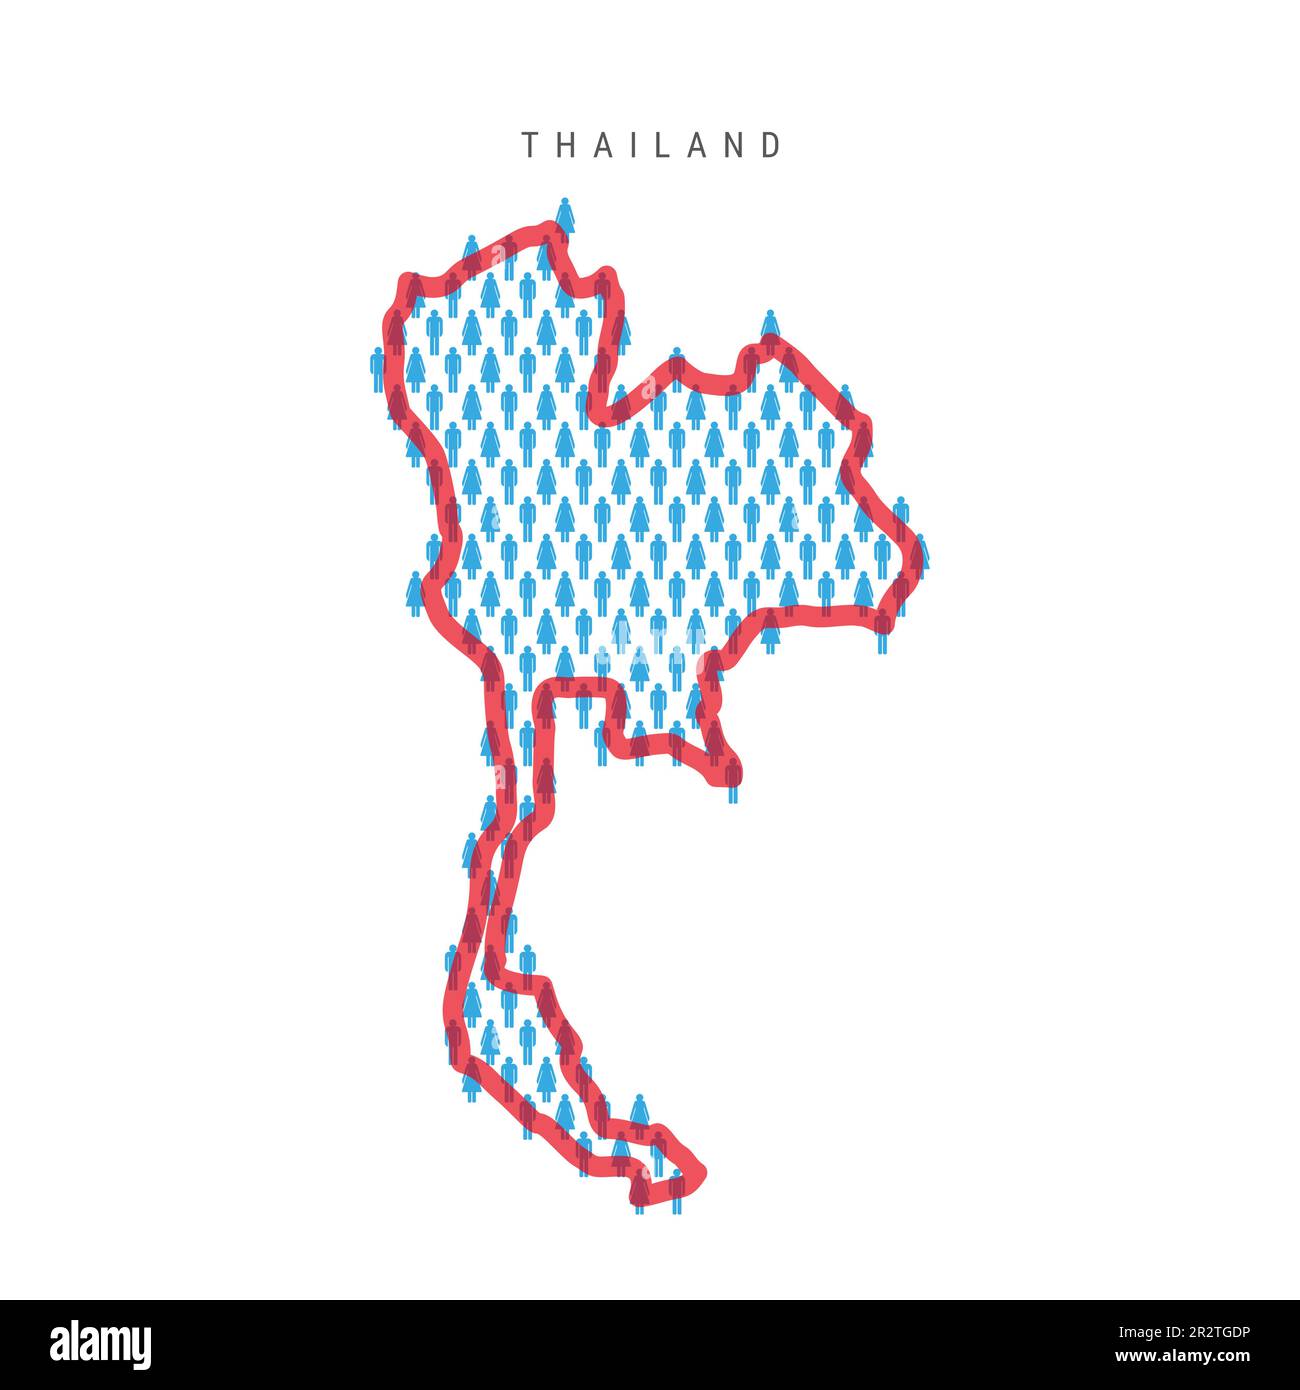 Karte der Bevölkerung Thailands. Strichfiguren Thailändische Landkarte mit auffälliger roter, durchsichtiger Landesgrenze. Muster von Männer- und Frauensymbolen. Isolierte Vektorillus Stock Vektor